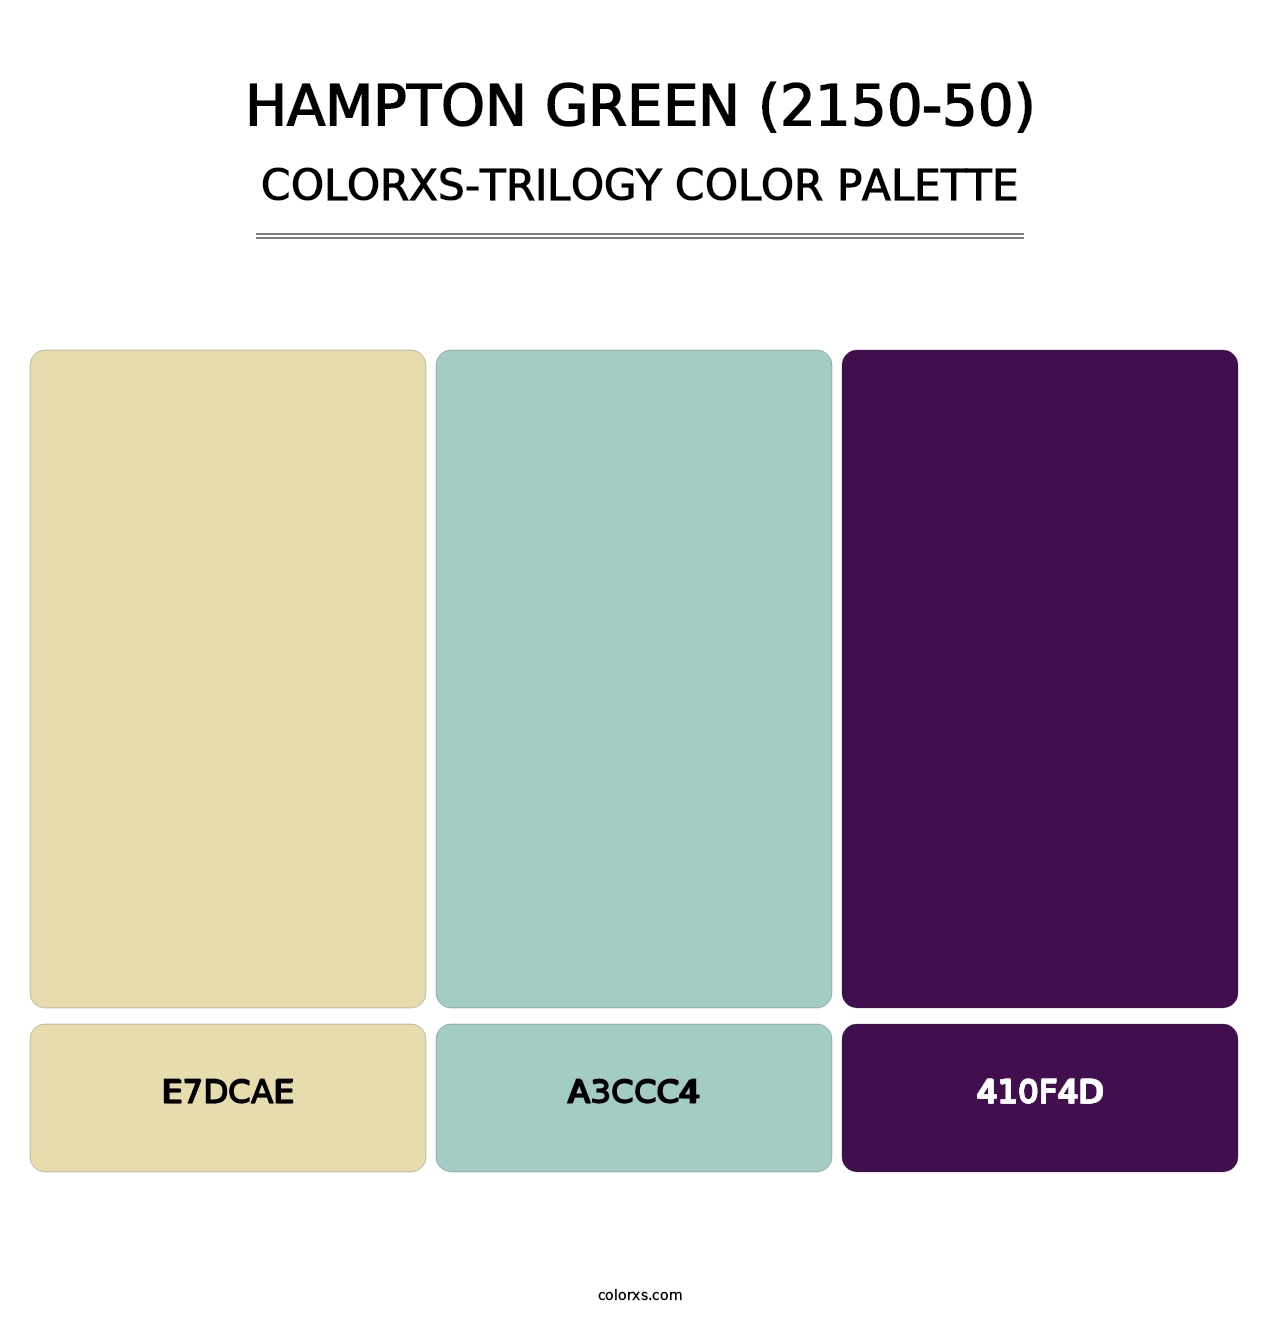 Hampton Green (2150-50) - Colorxs Trilogy Palette